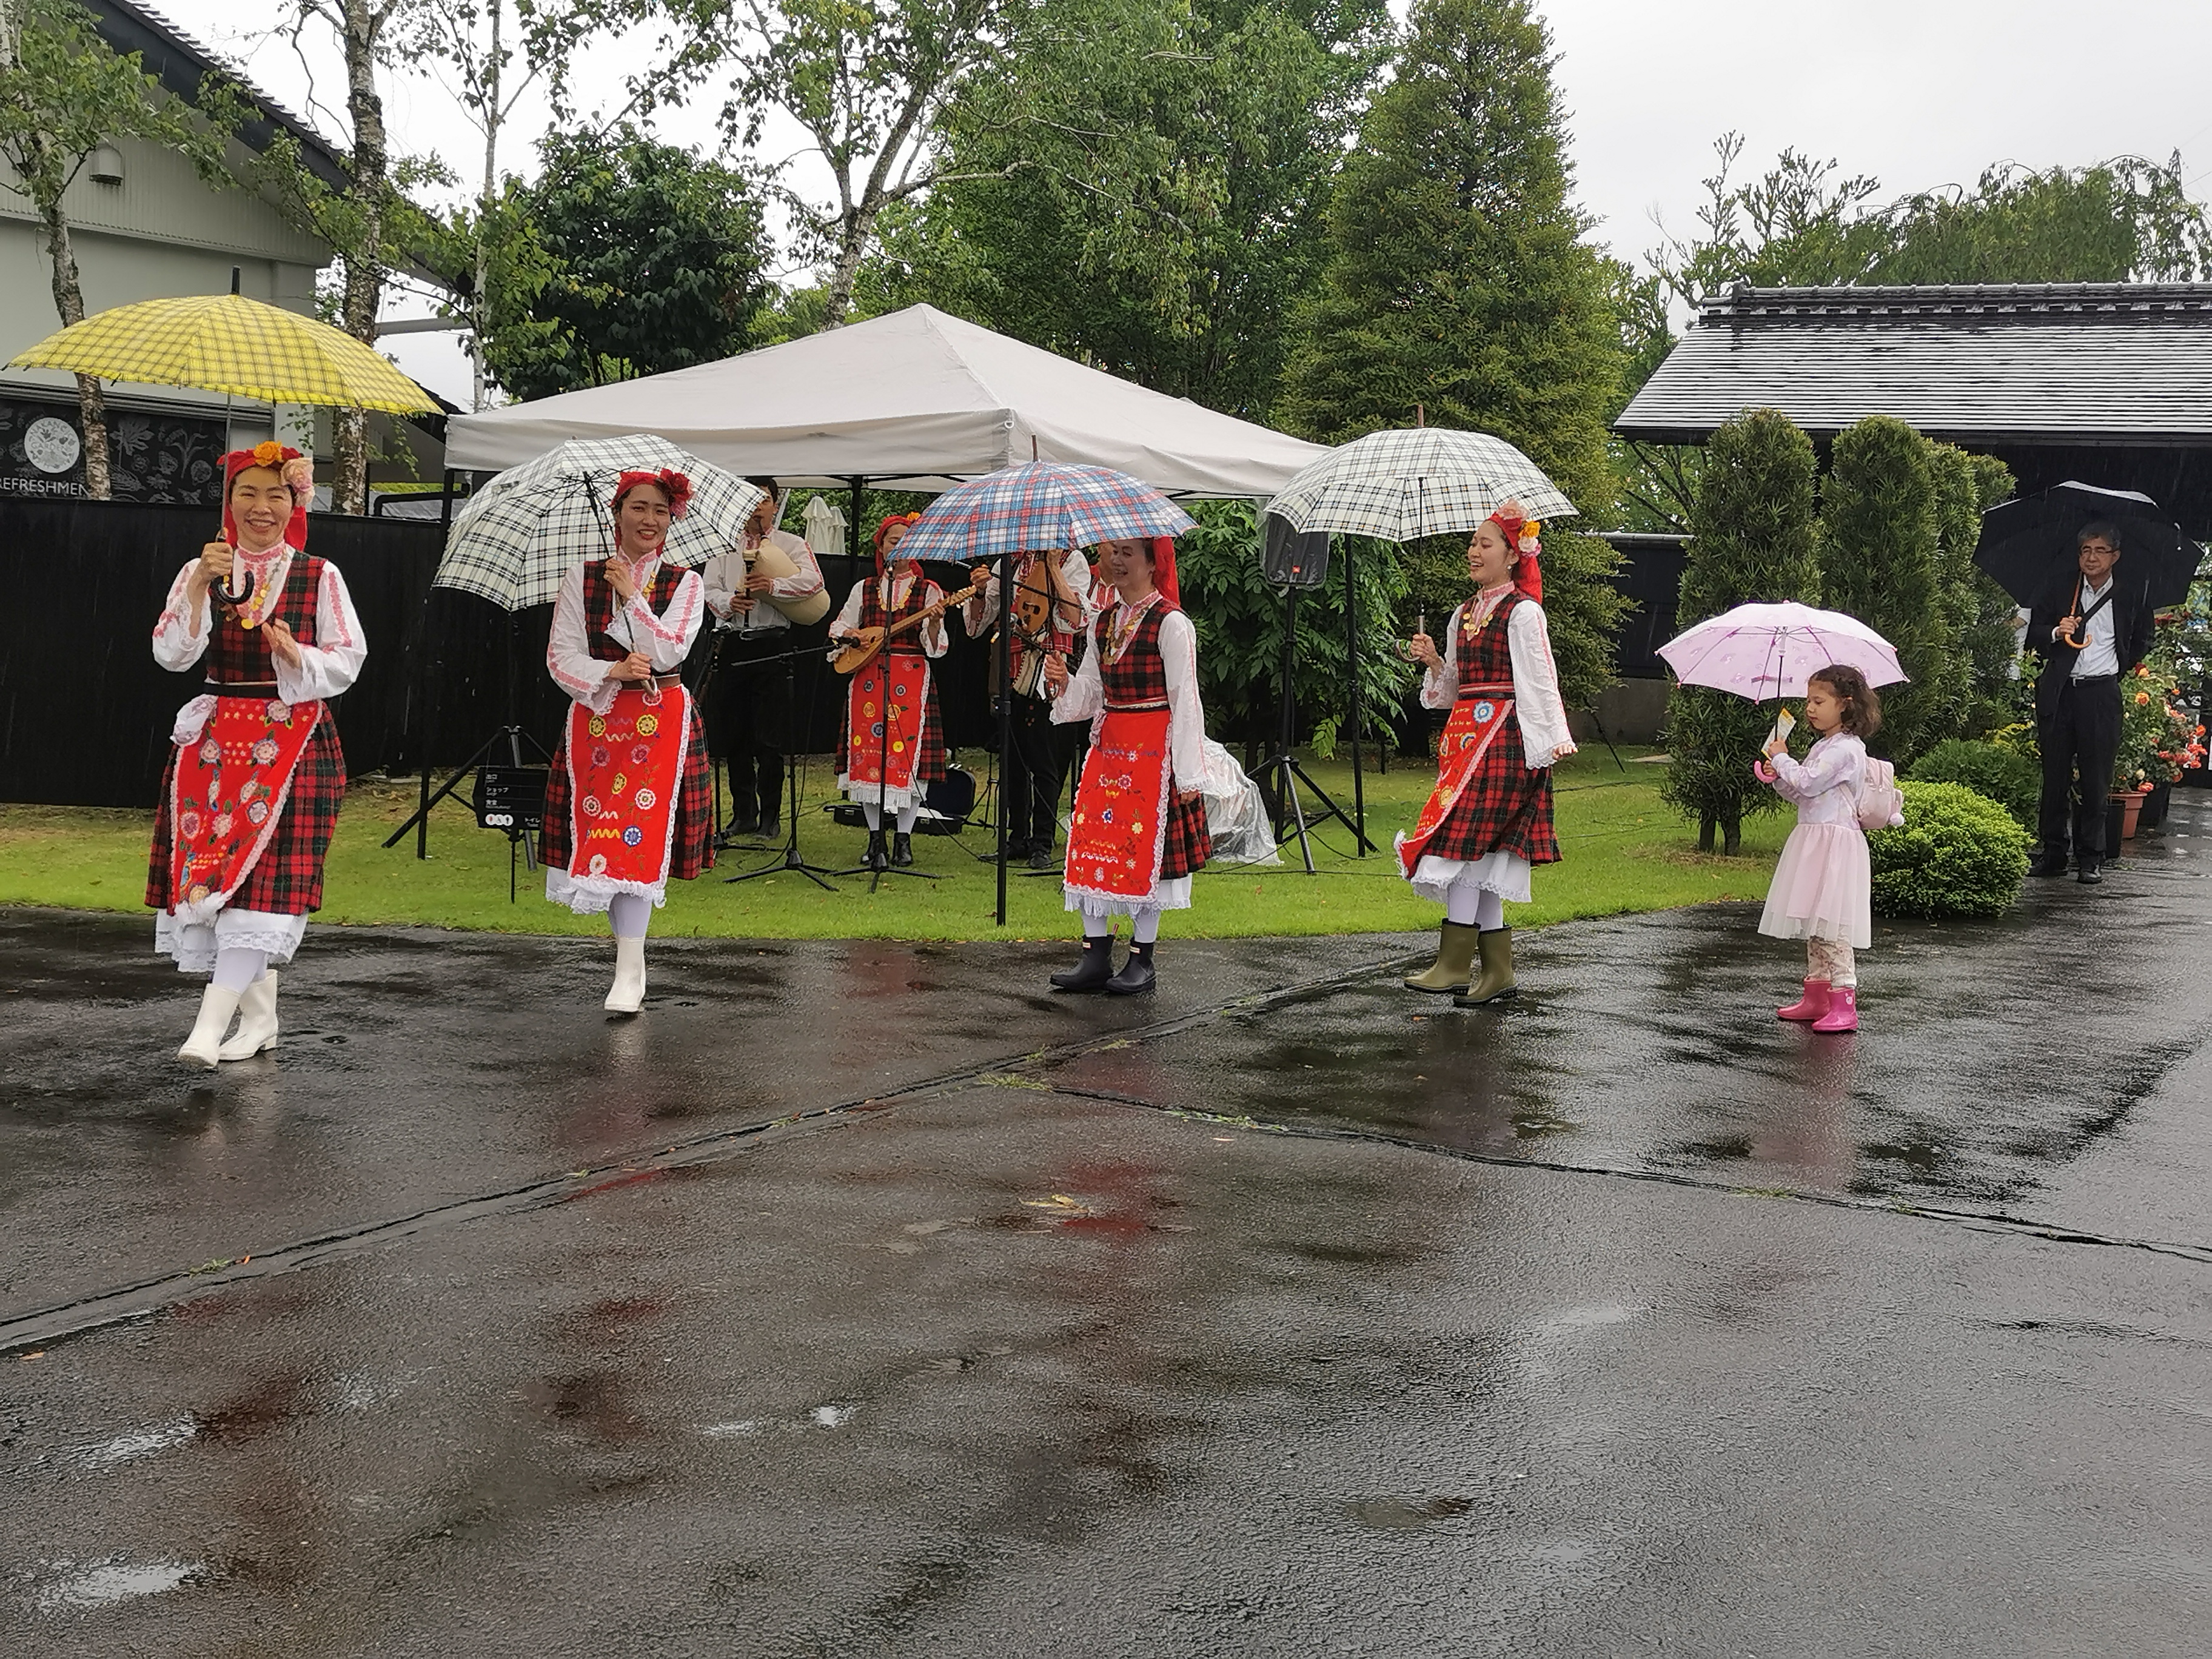 Български фестивал в градината Nakanojo Gardens в префектура Гунма“